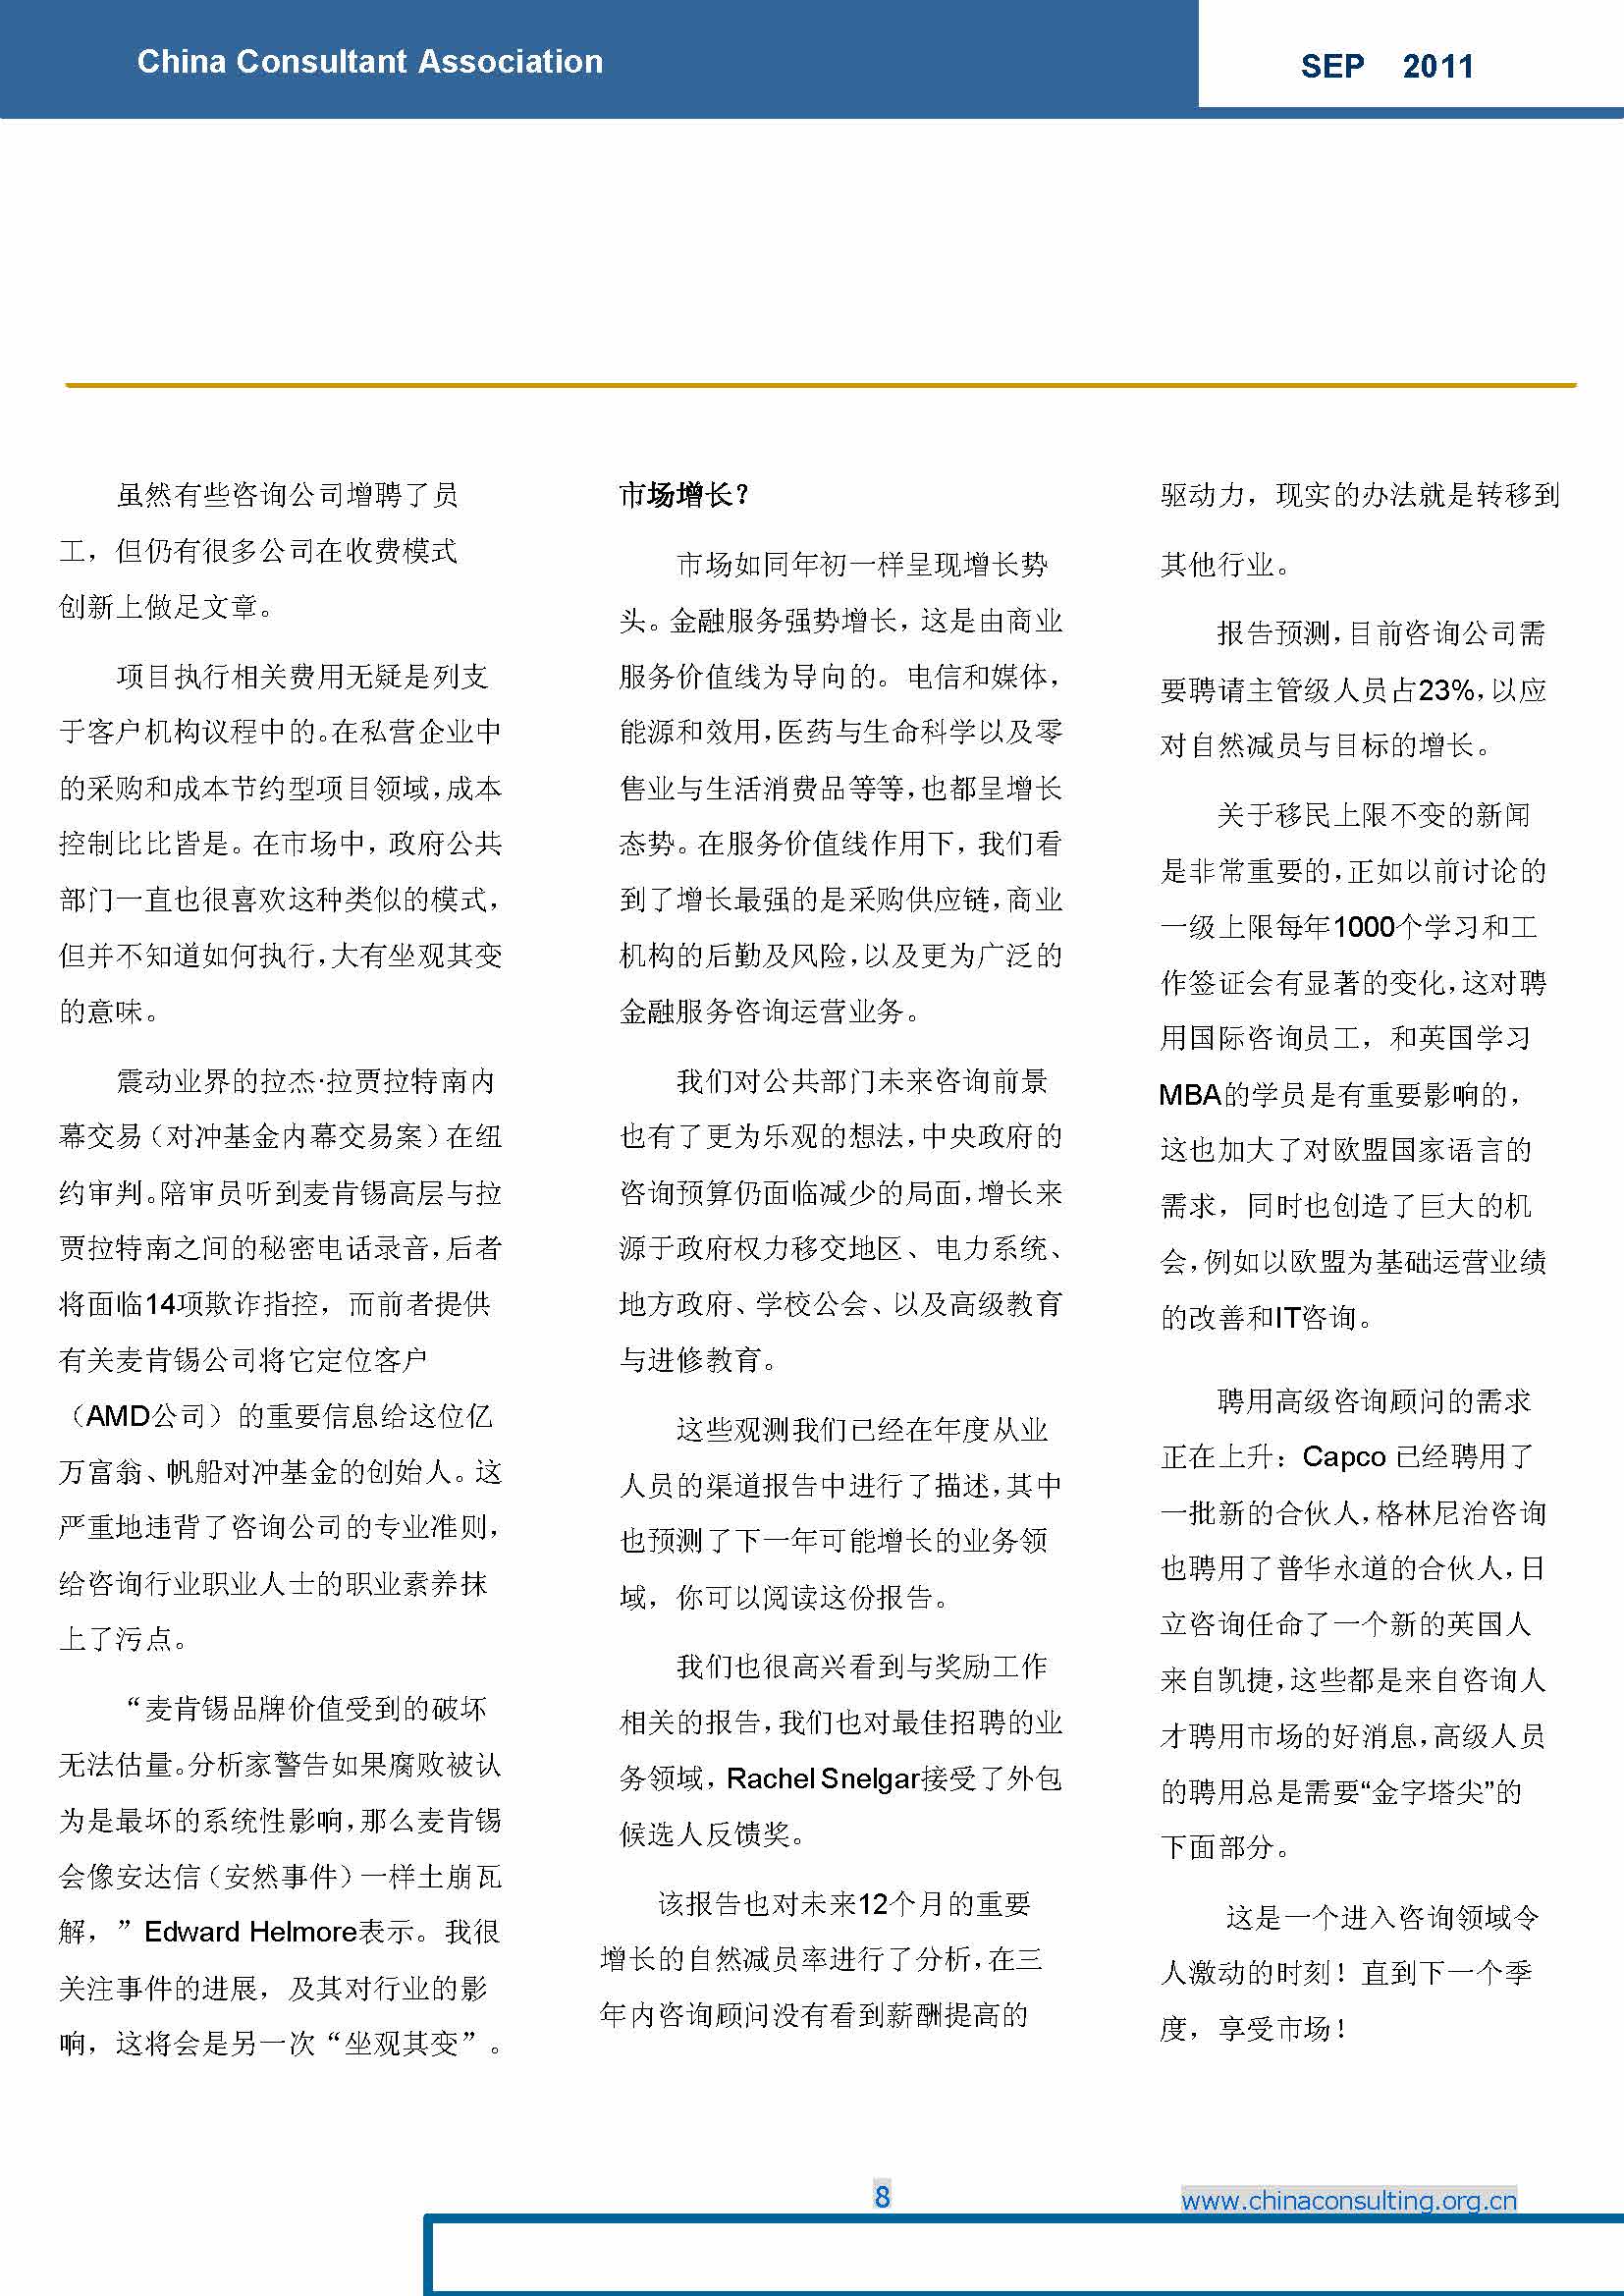 3中国科技咨询协会国际快讯（第三期）_页面_10.jpg